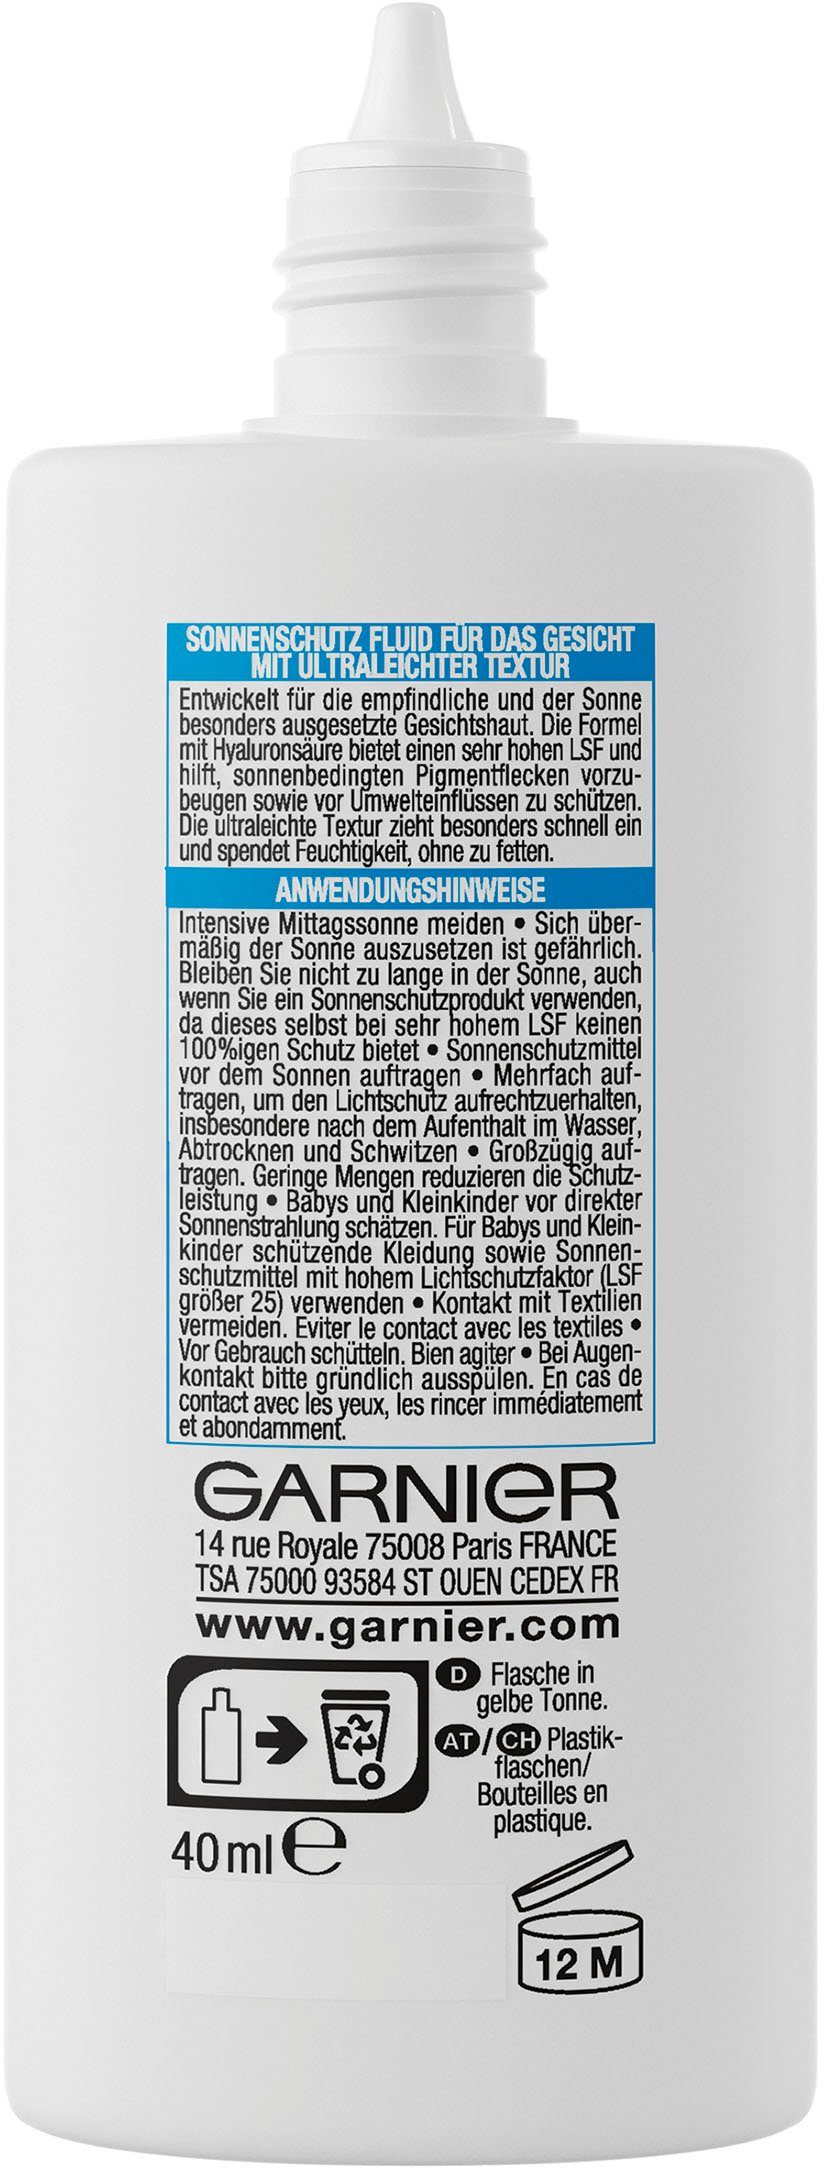 Sensitive GARNIER LSF 50 Sonnenschutzfluid Hyaluronsäure mit expert+, Ambre Solaire